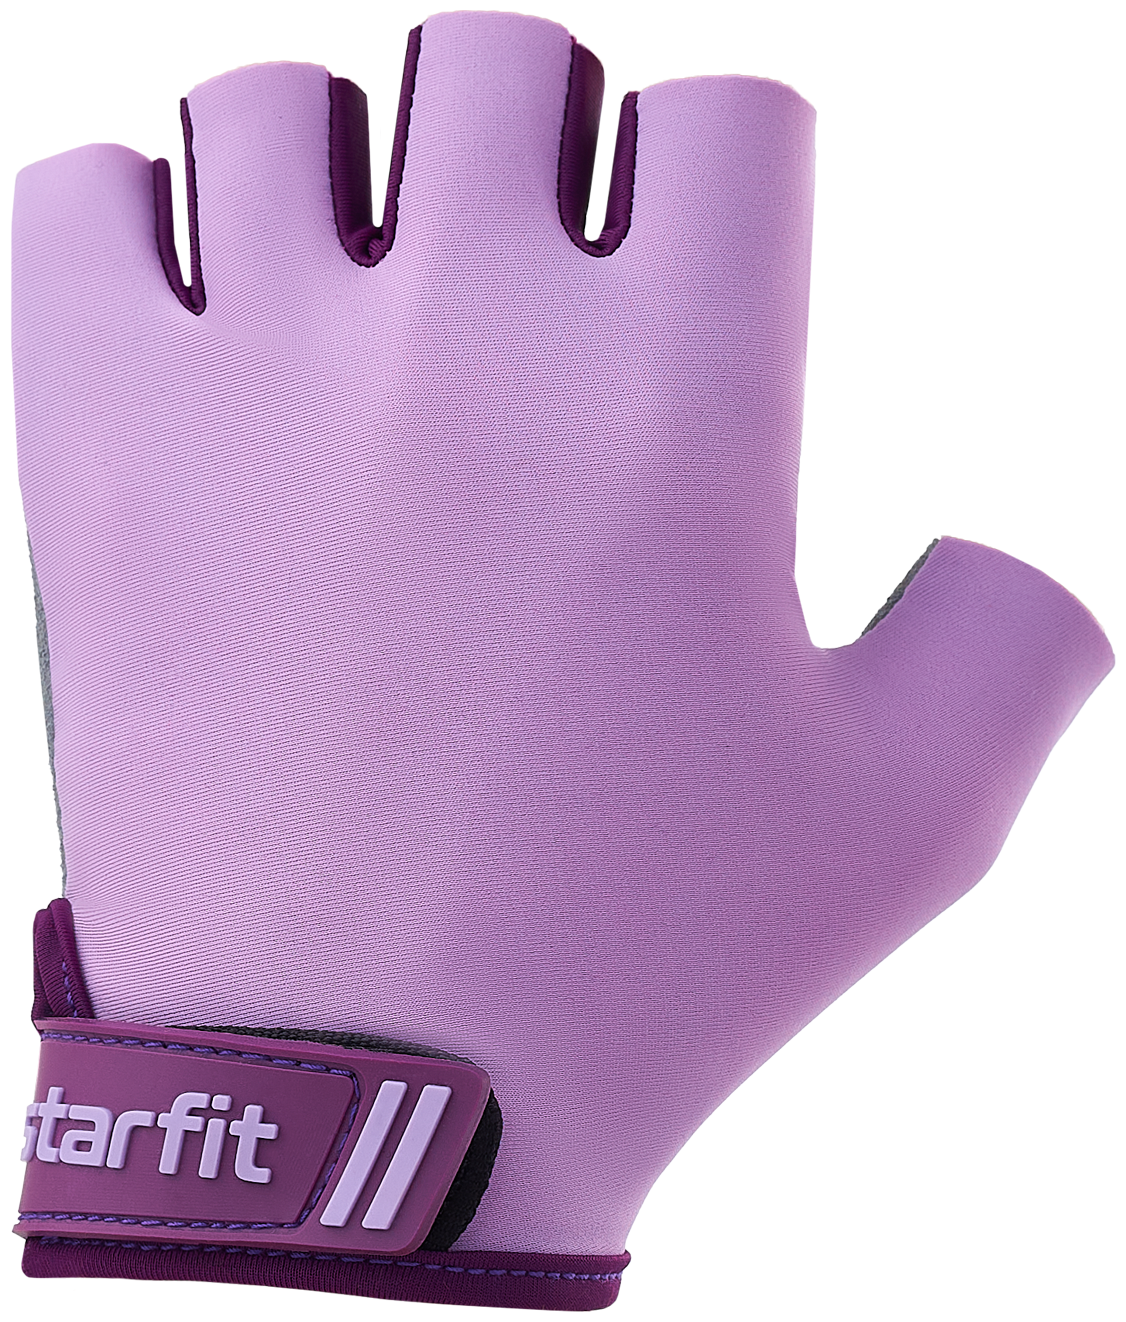 Перчатки для фитнеса Starfit WG-101, фиолетовый, M